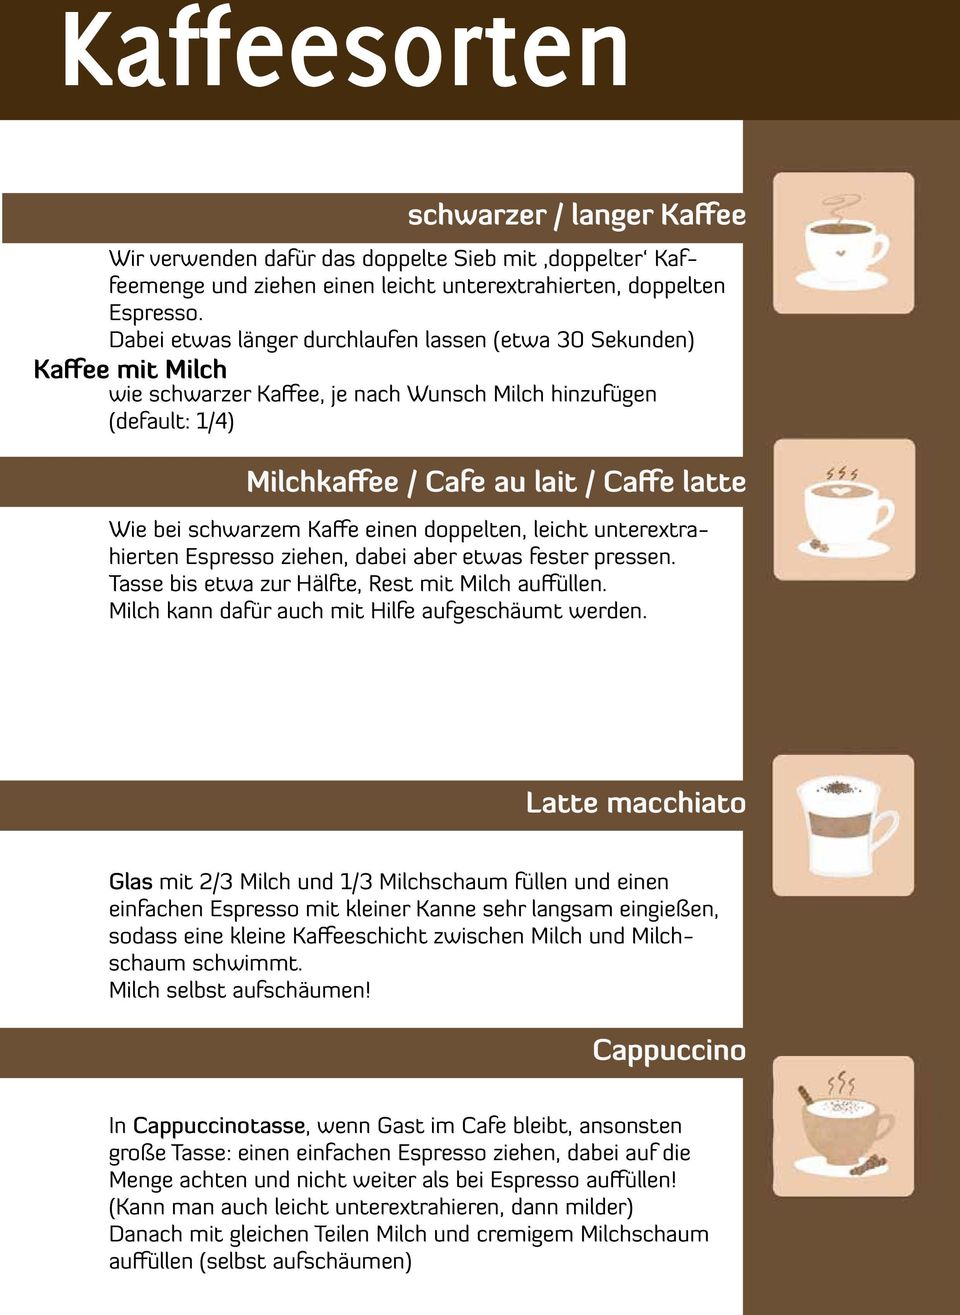 Caffe latte Wie bei schwarzem Kaffe einen doppelten, leicht unterextrahierten Espresso ziehen, dabei aber etwas fester pressen. Tasse bis etwa zur Hälfte, Rest mit Milch auffüllen.